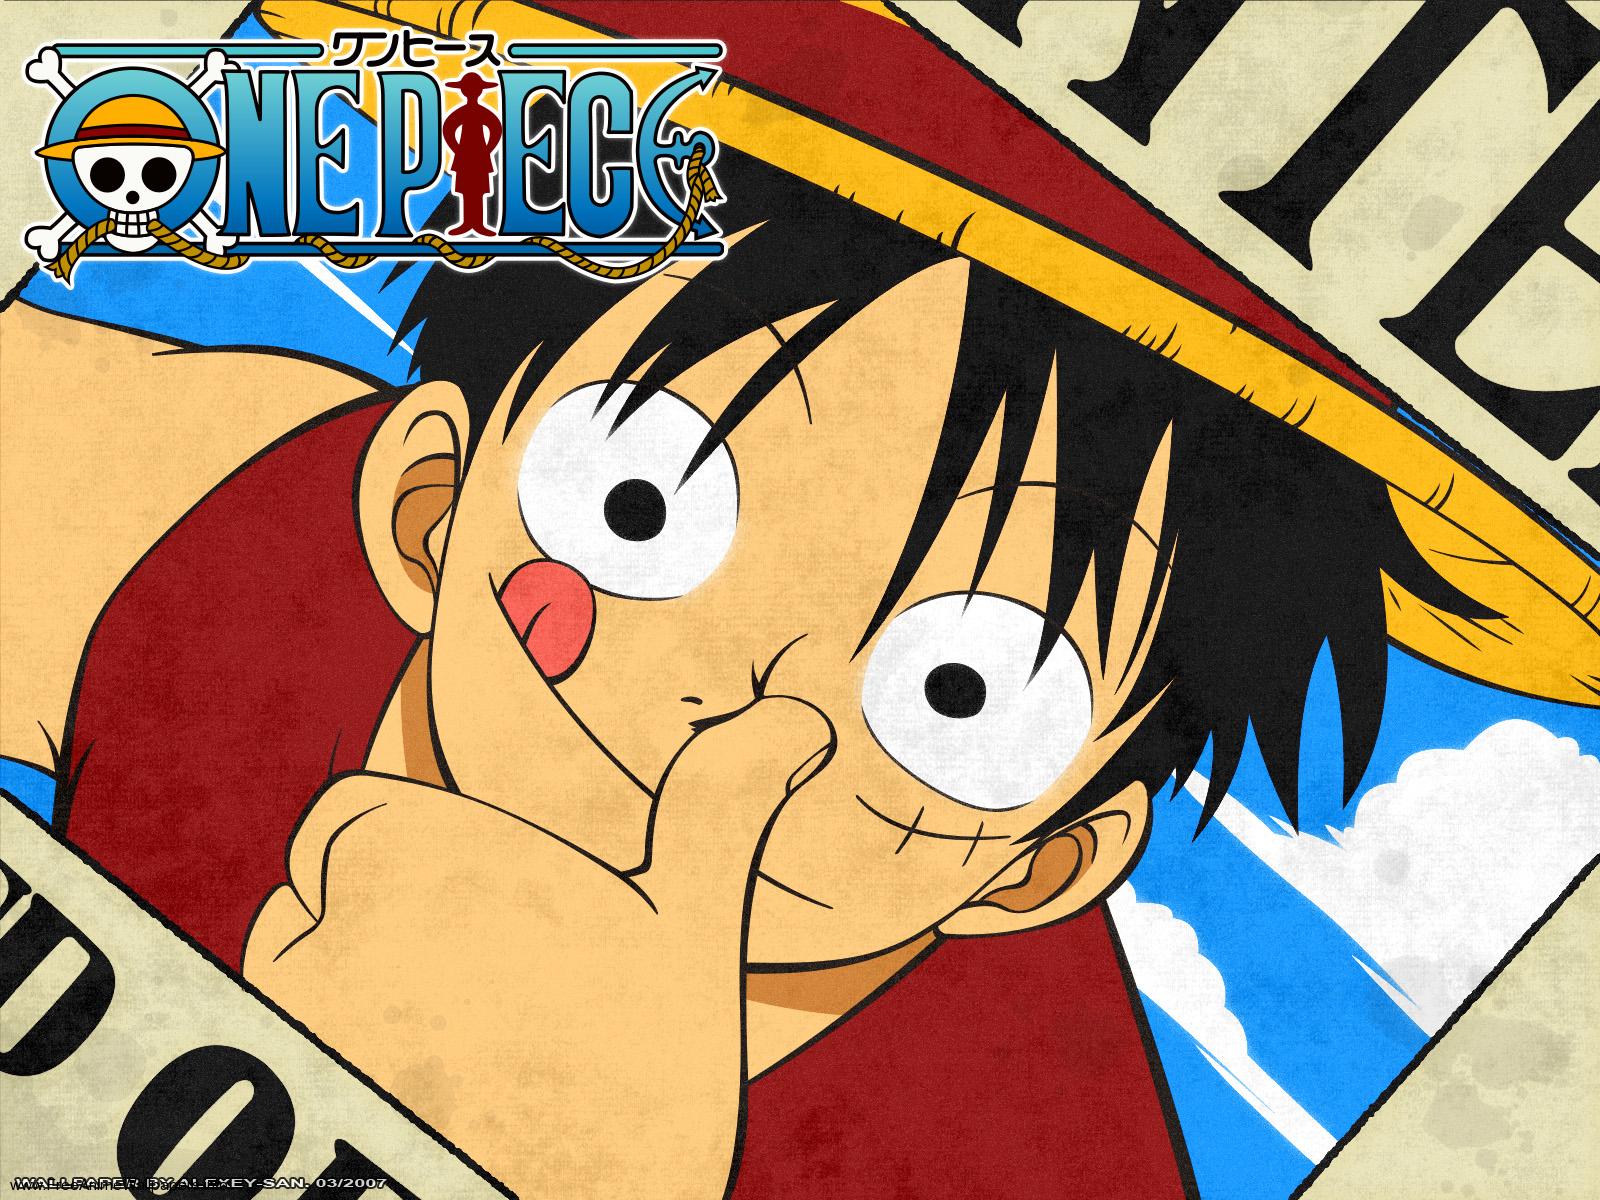 One Piece 1 - O Grande Pirata do Ouro - 4 de Março de 2000